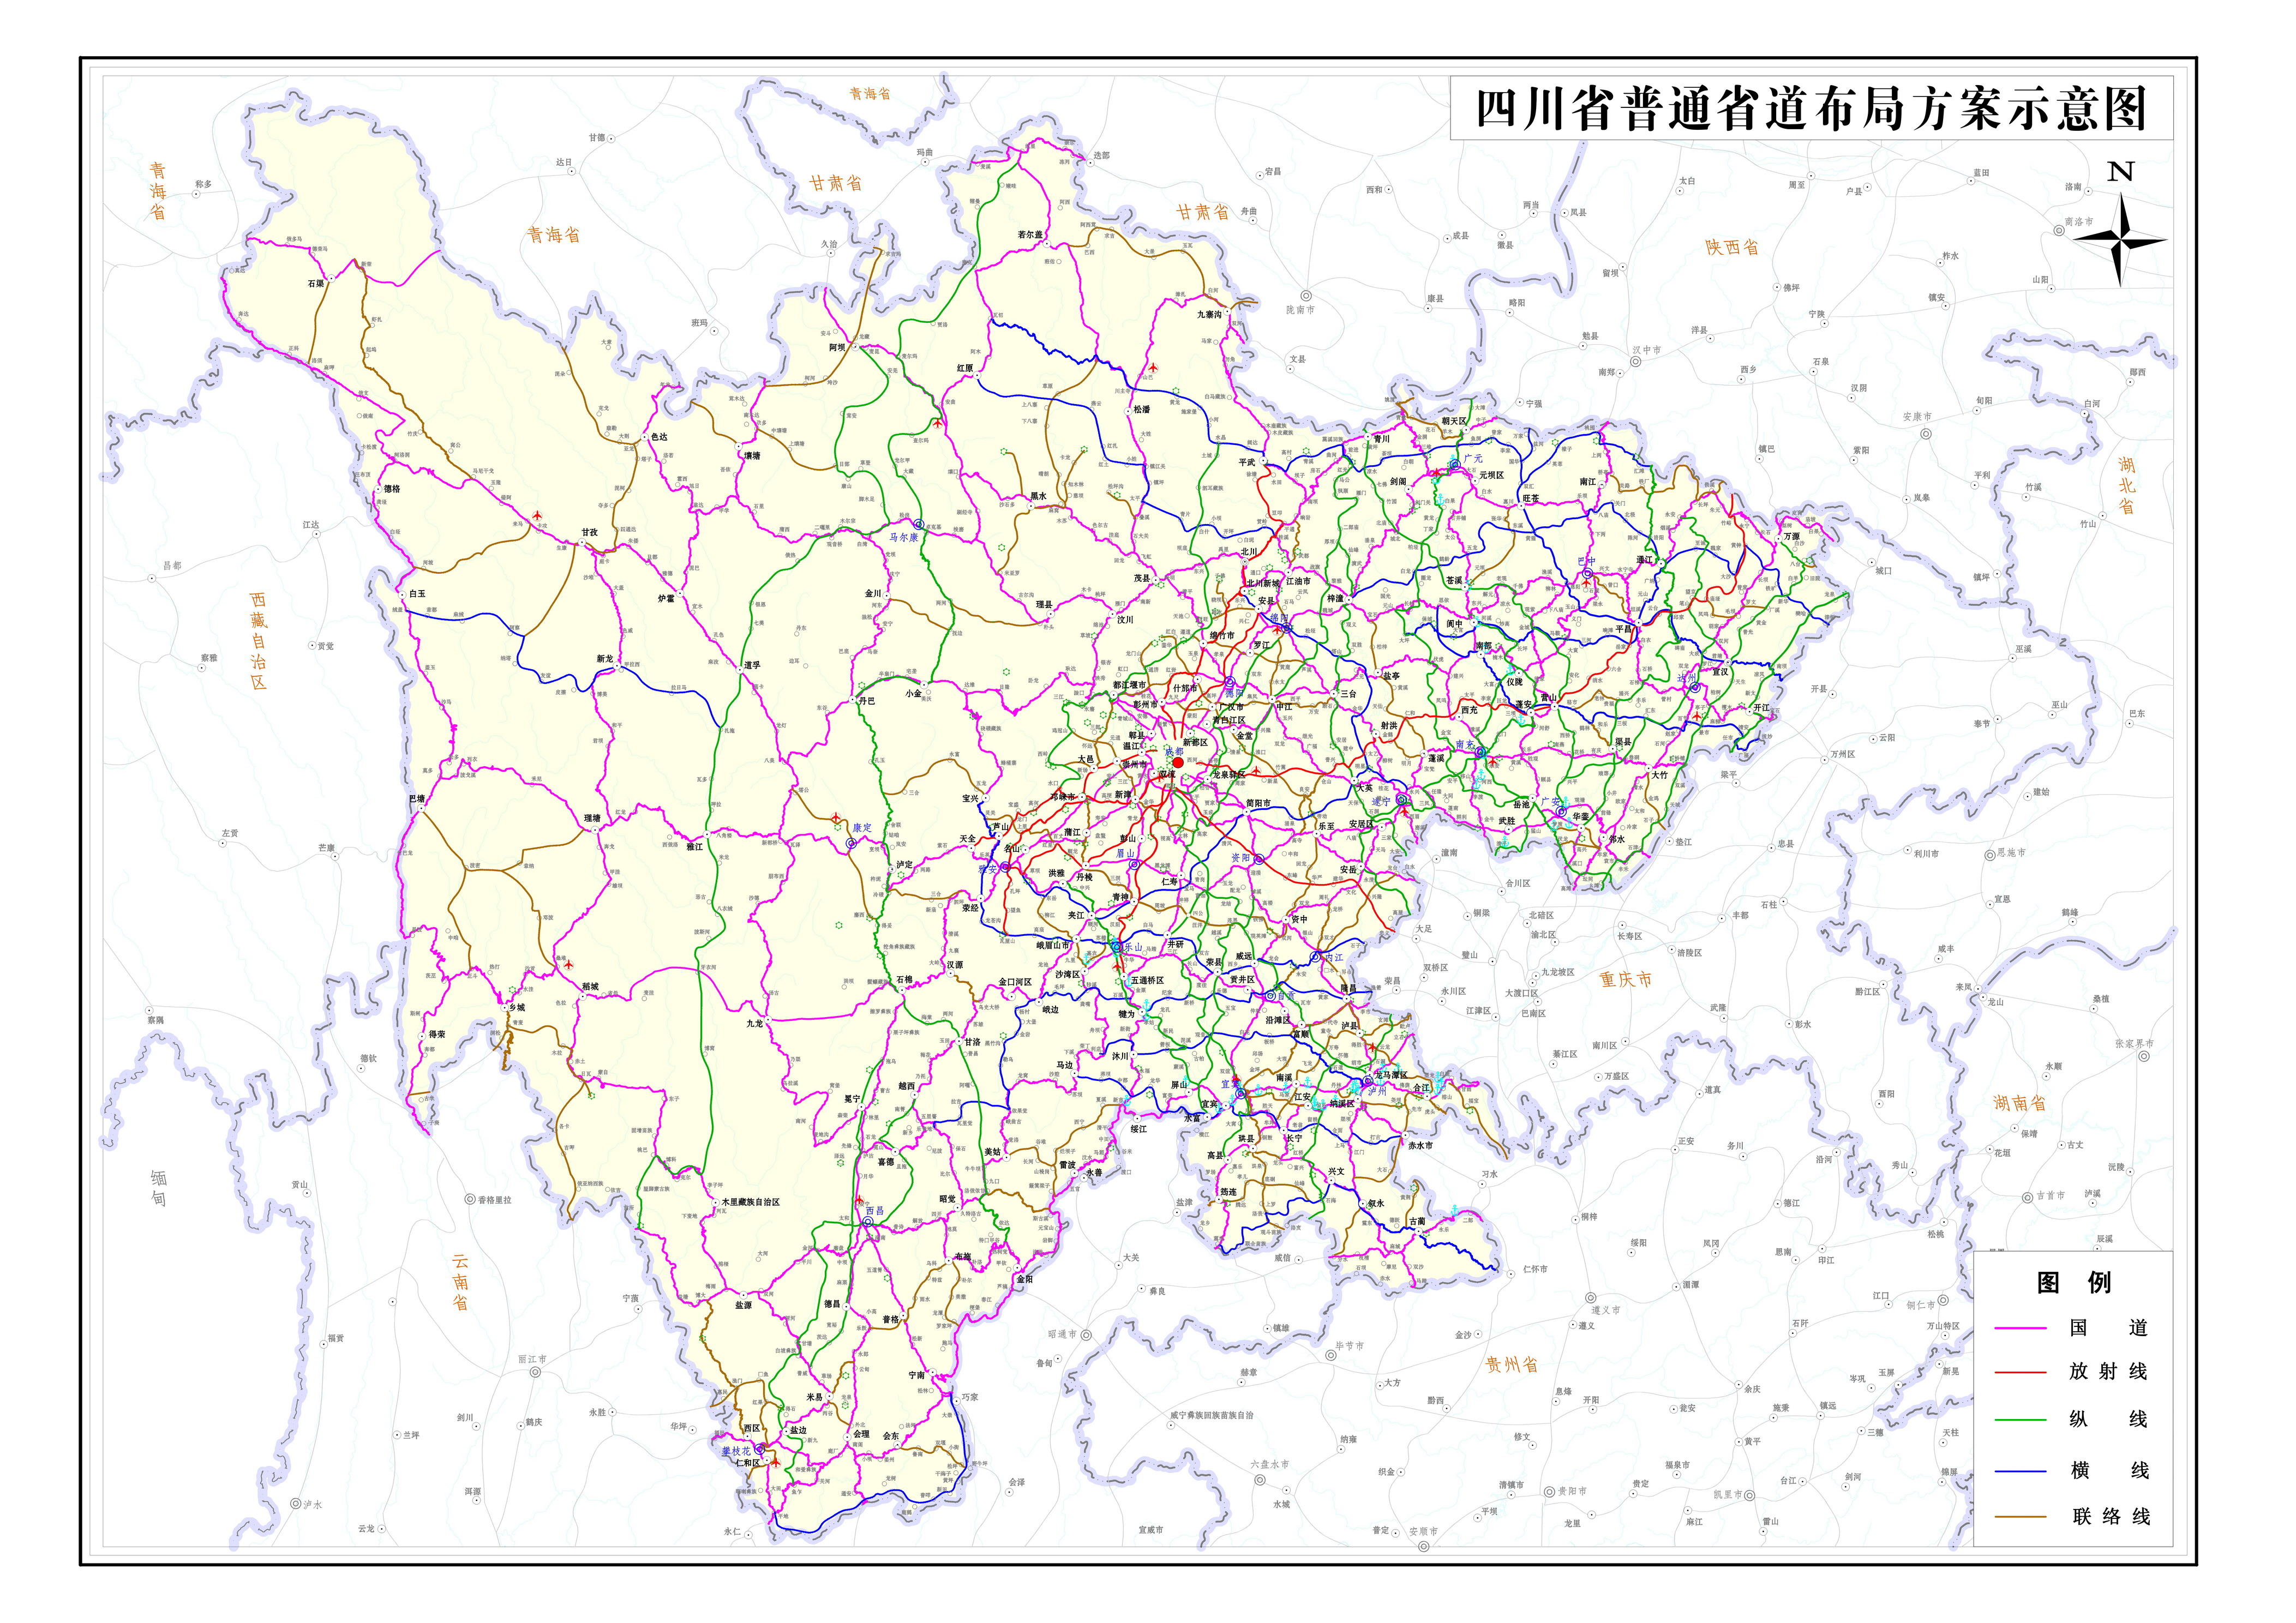 四川省普通省道网布局规划 (2014-2030年)示意图